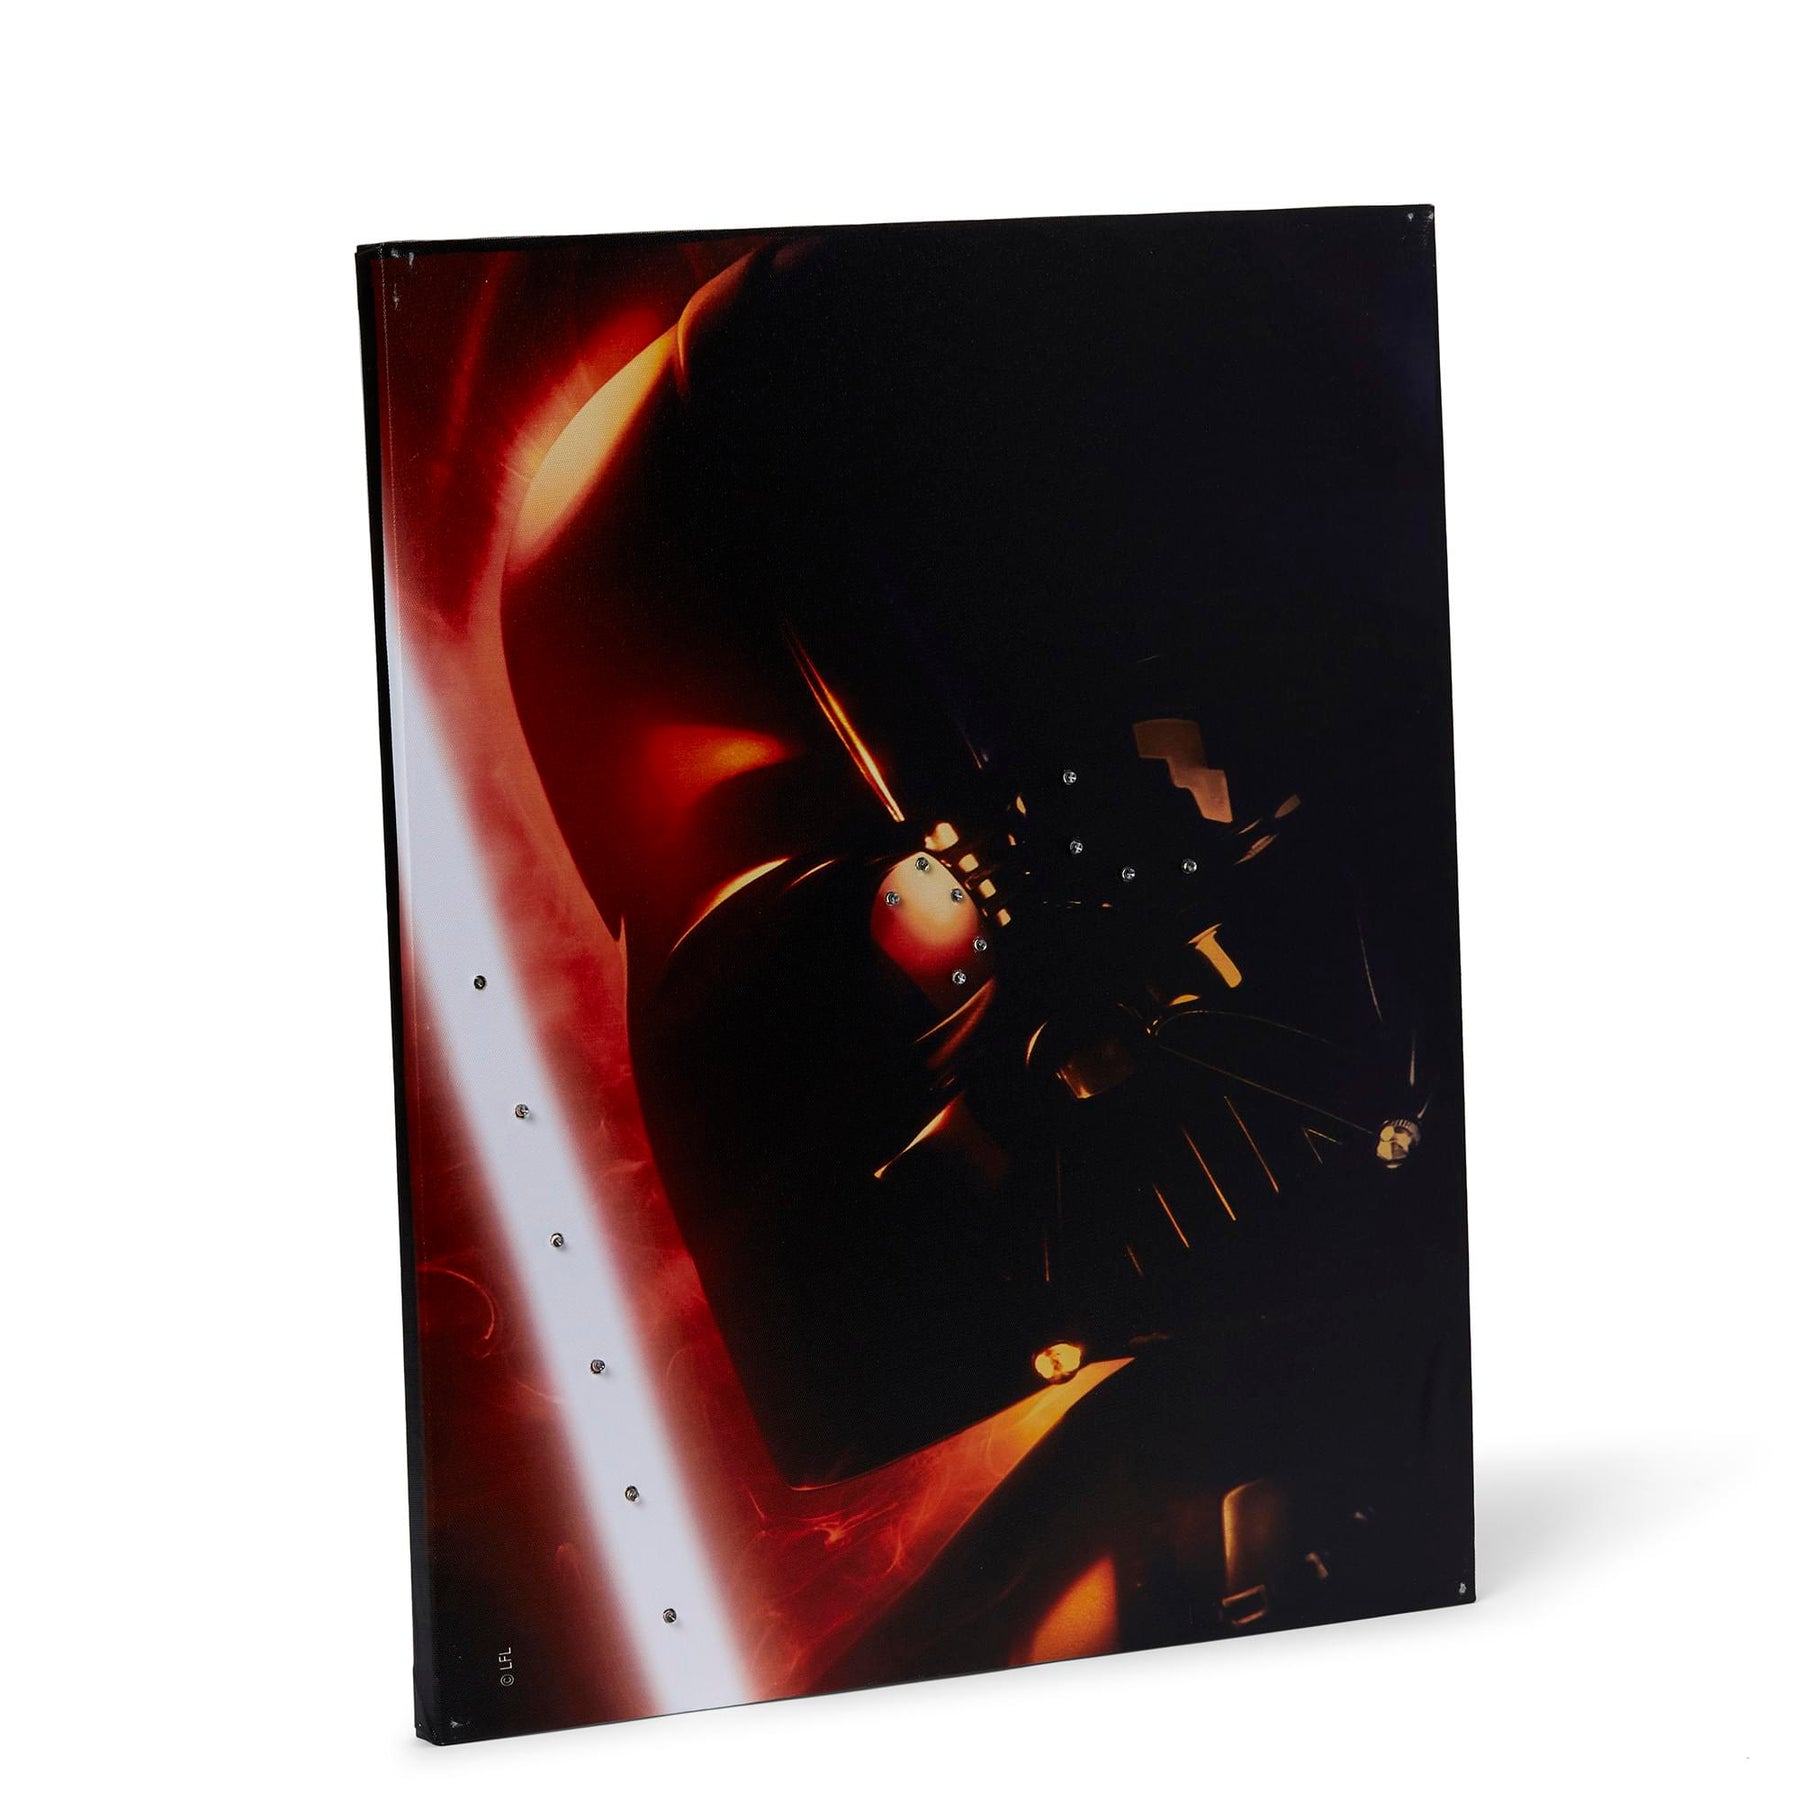 Star Wars Illuminated Canvas Art - 23.9”x19.9” - Darth Vader